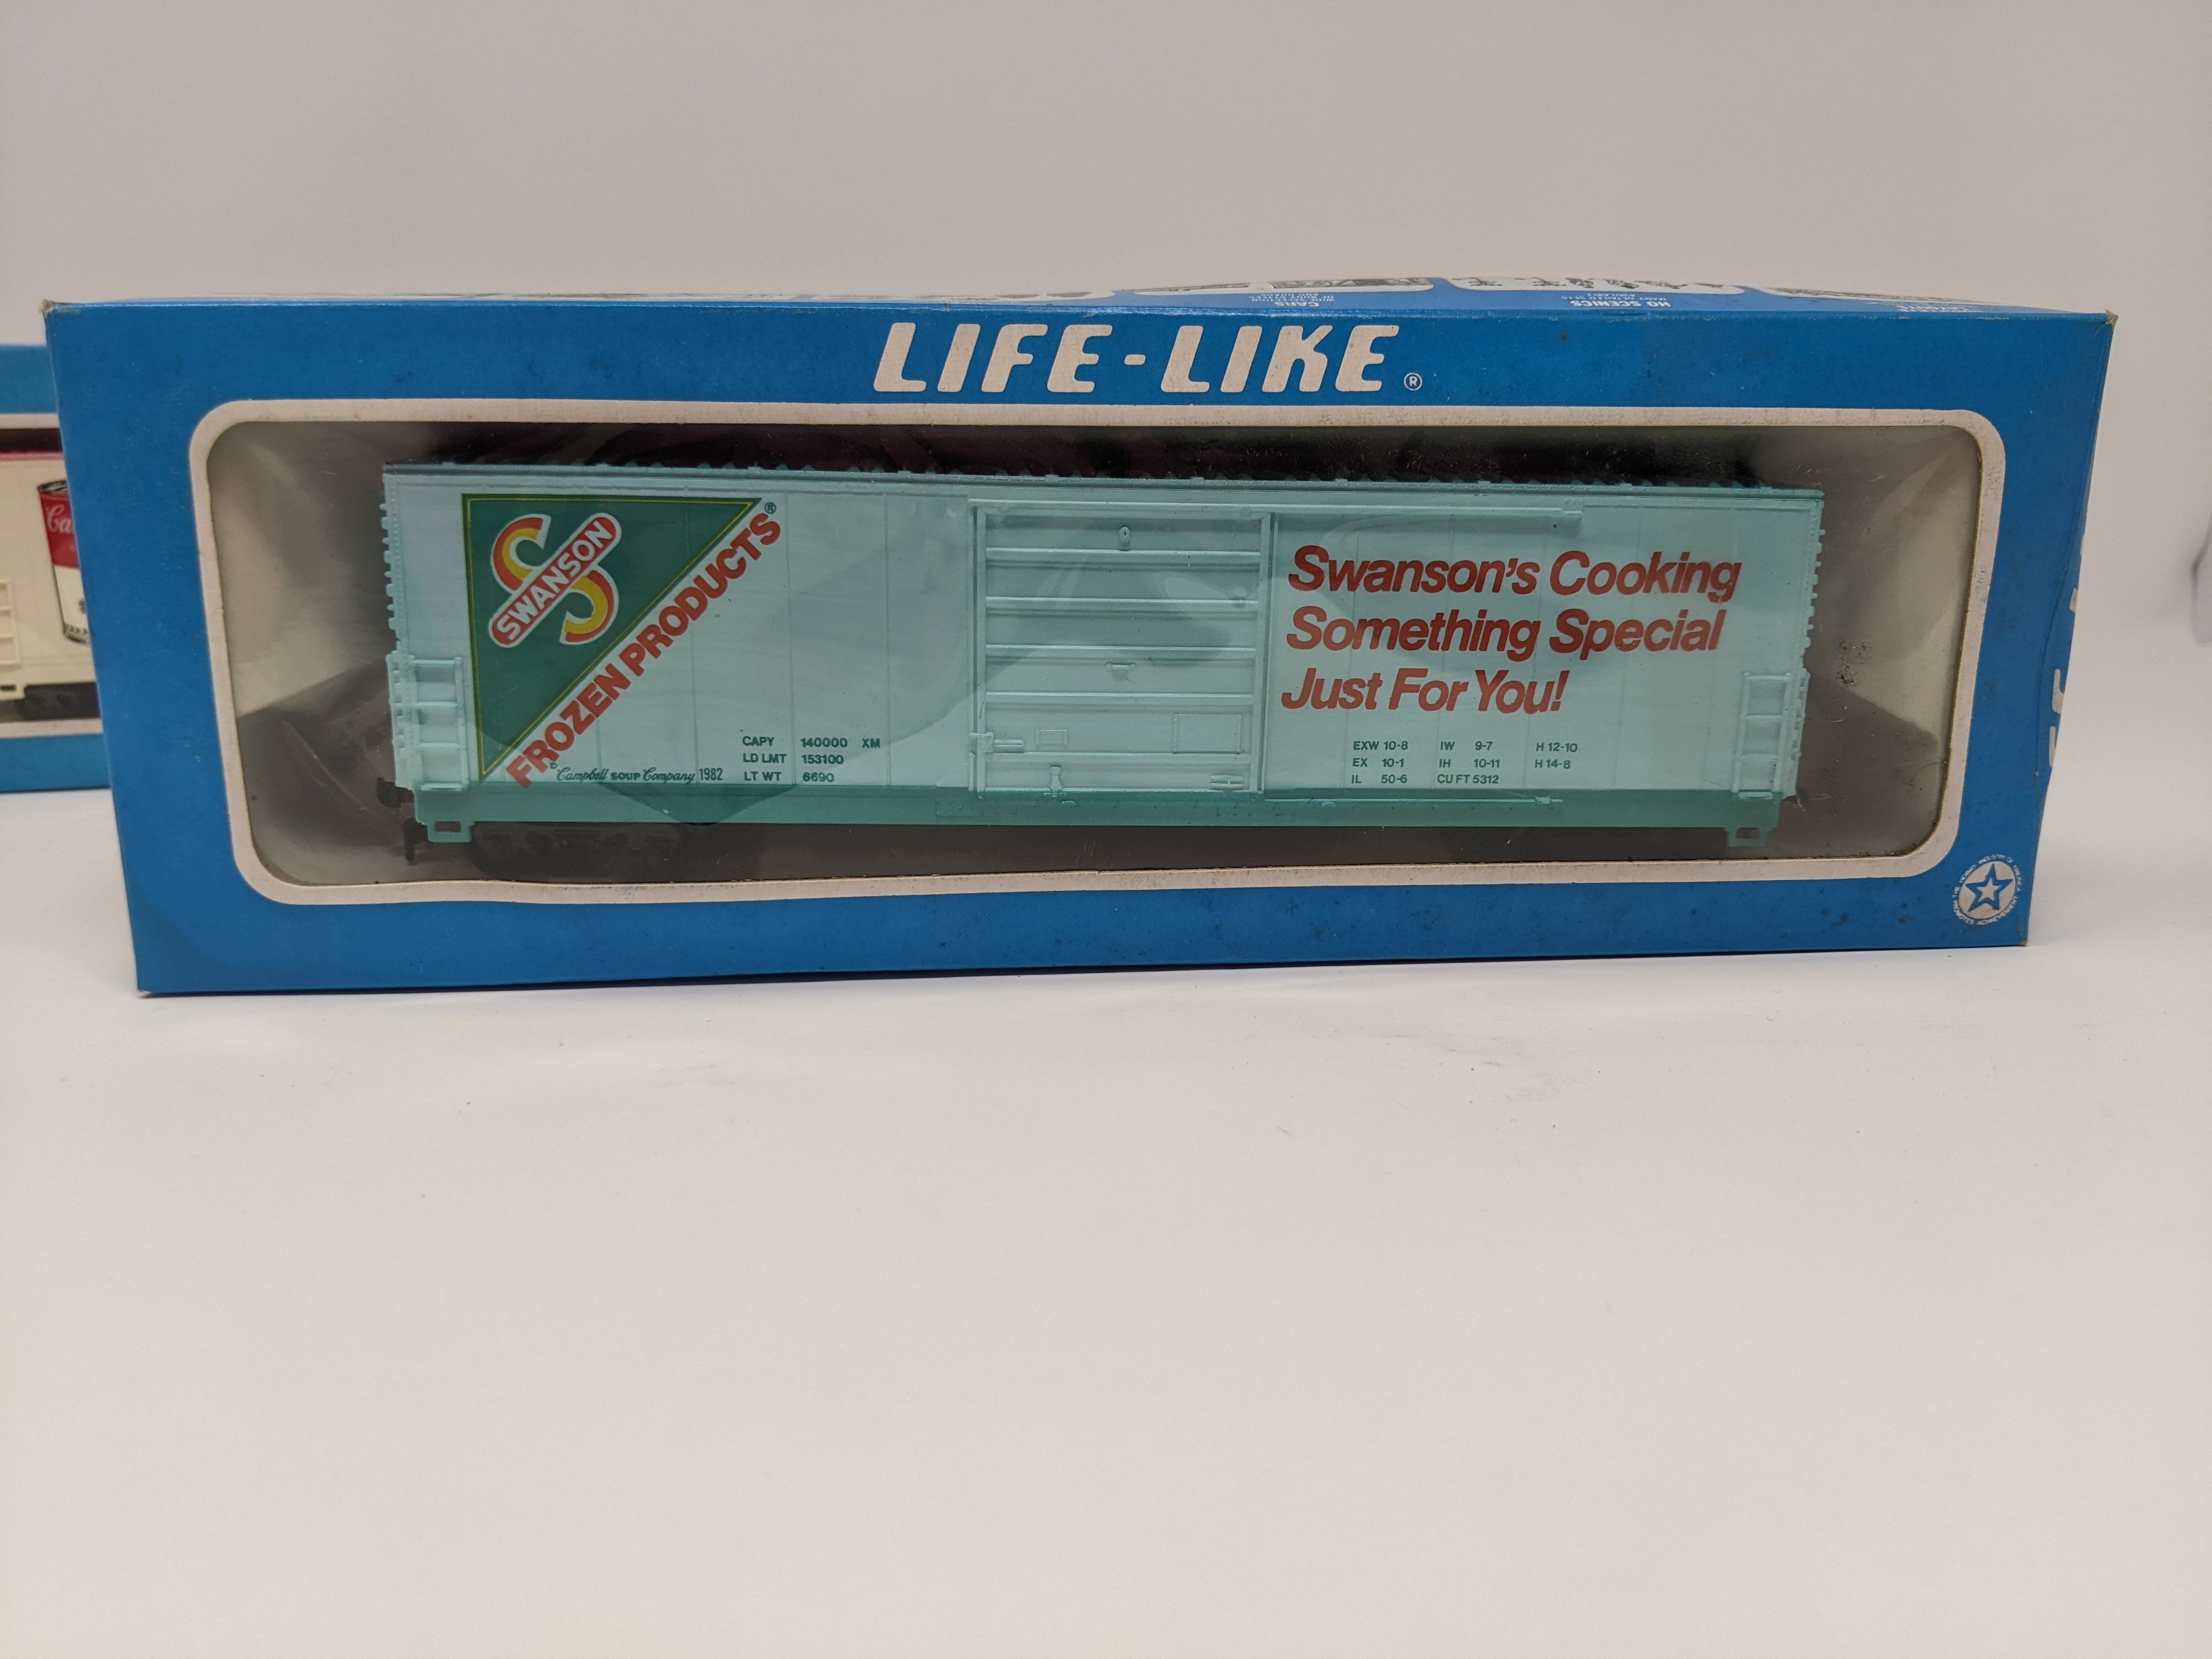 USED Life-Like HO Scale, Campbell's Soup Train Set 1982